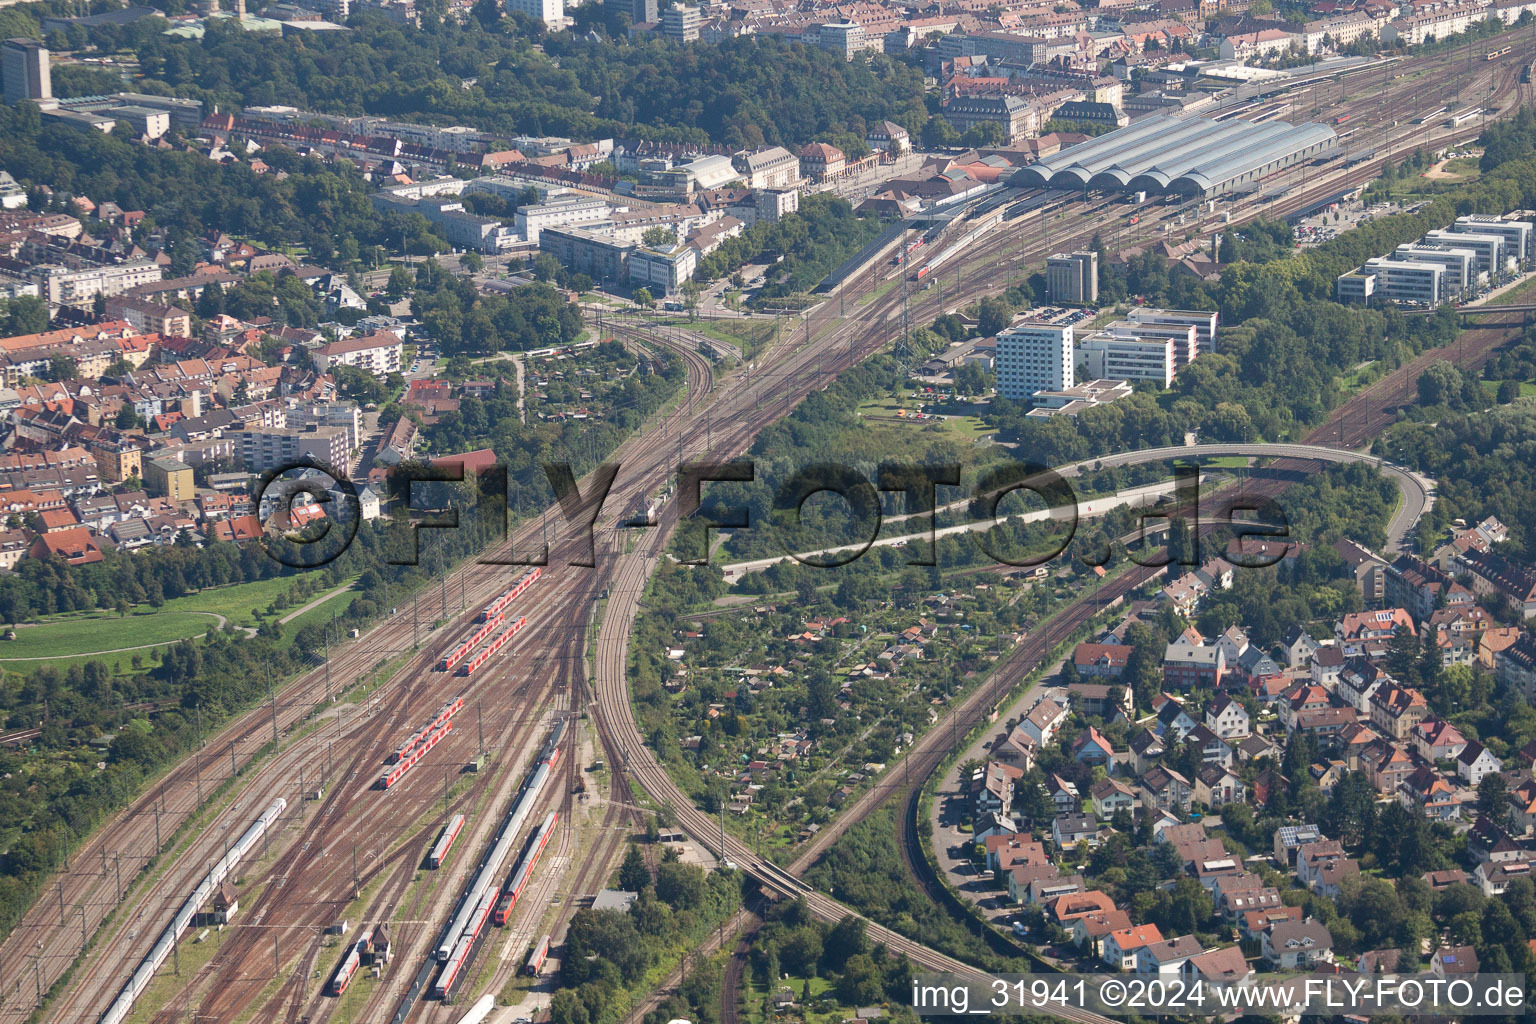 Luftaufnahme von Gleisverlauf und Gebäude des Hauptbahnhofes der Deutschen Bahn in Karlsruhe im Ortsteil Südweststadt im Bundesland Baden-Württemberg, Deutschland